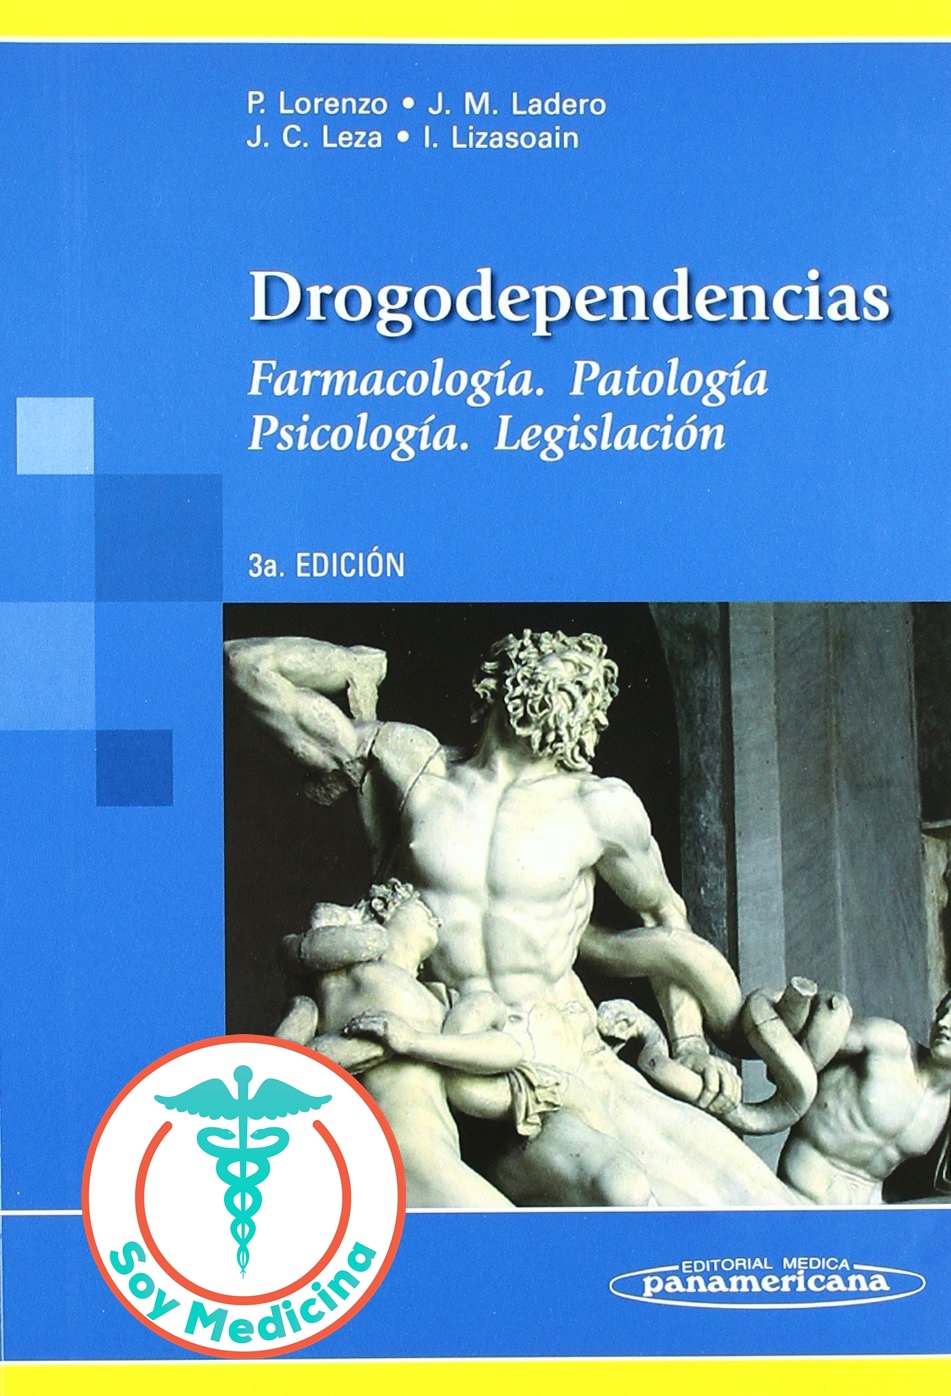 Drogodependencias. Farmacología, Patología, Psicología, Legislación